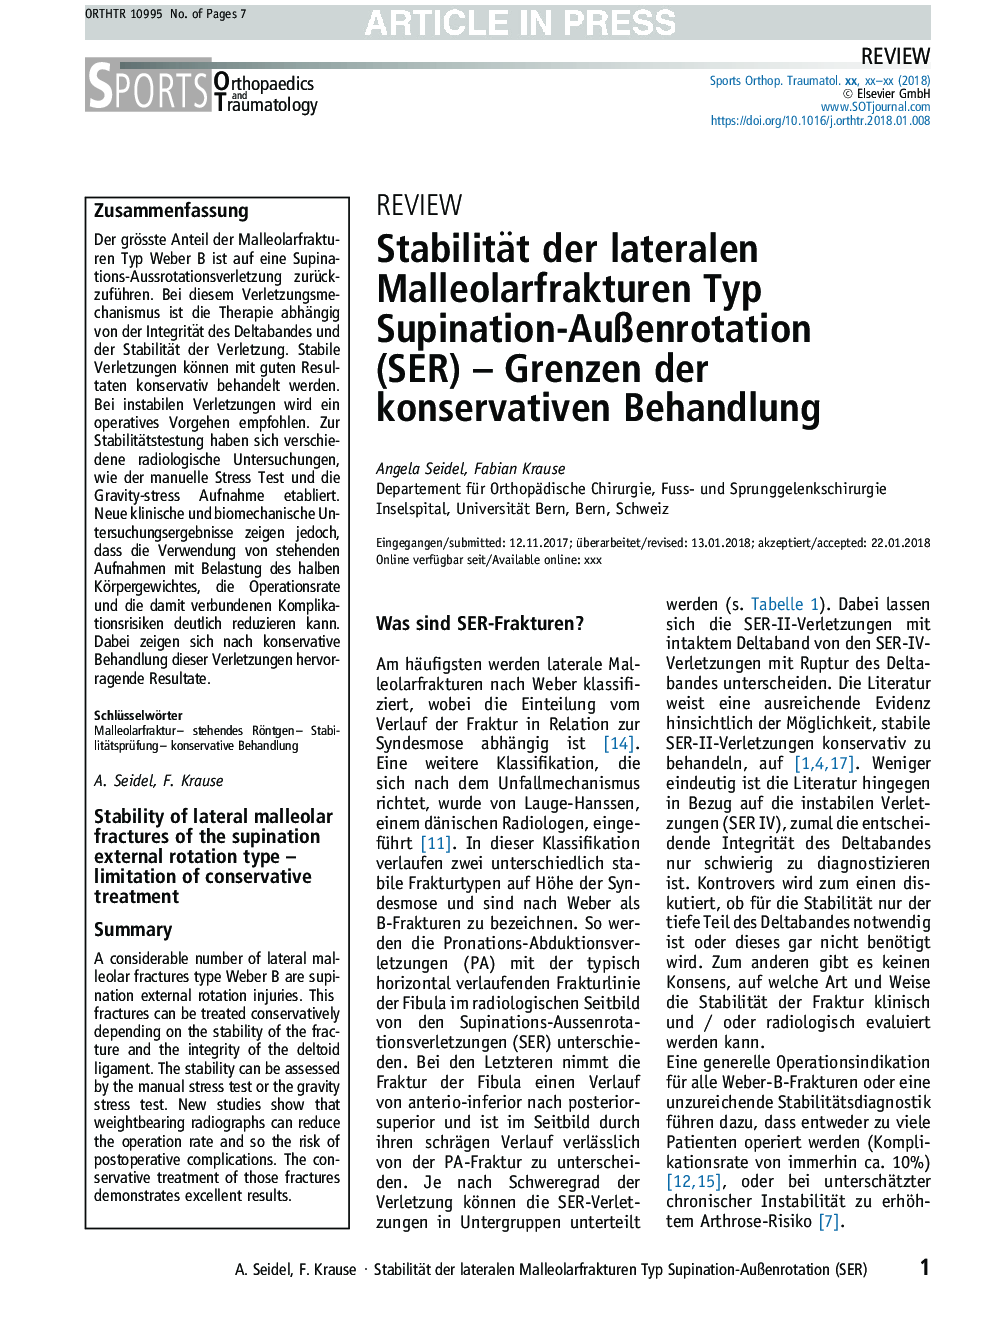 Stabilität der lateralen Malleolarfrakturen Typ Supination-AuÃenrotation (SER) - Grenzen der konservativen Behandlung